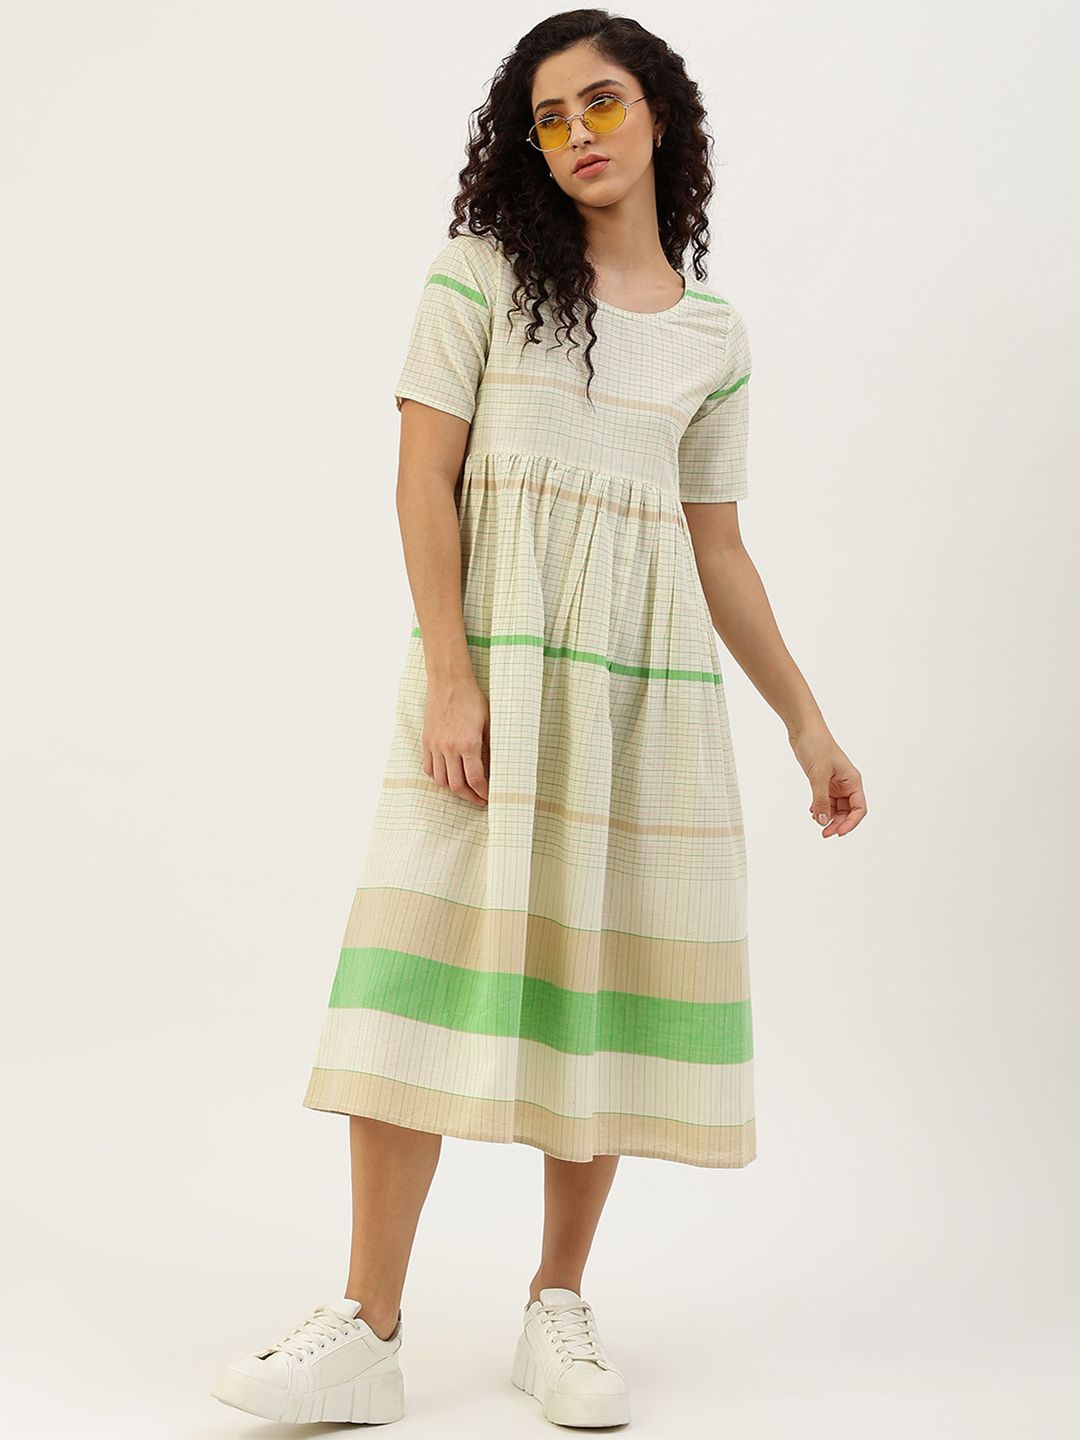 Lokatita Off-White & Green Checked A-Line Pure Cotton Midi Dress Price in India